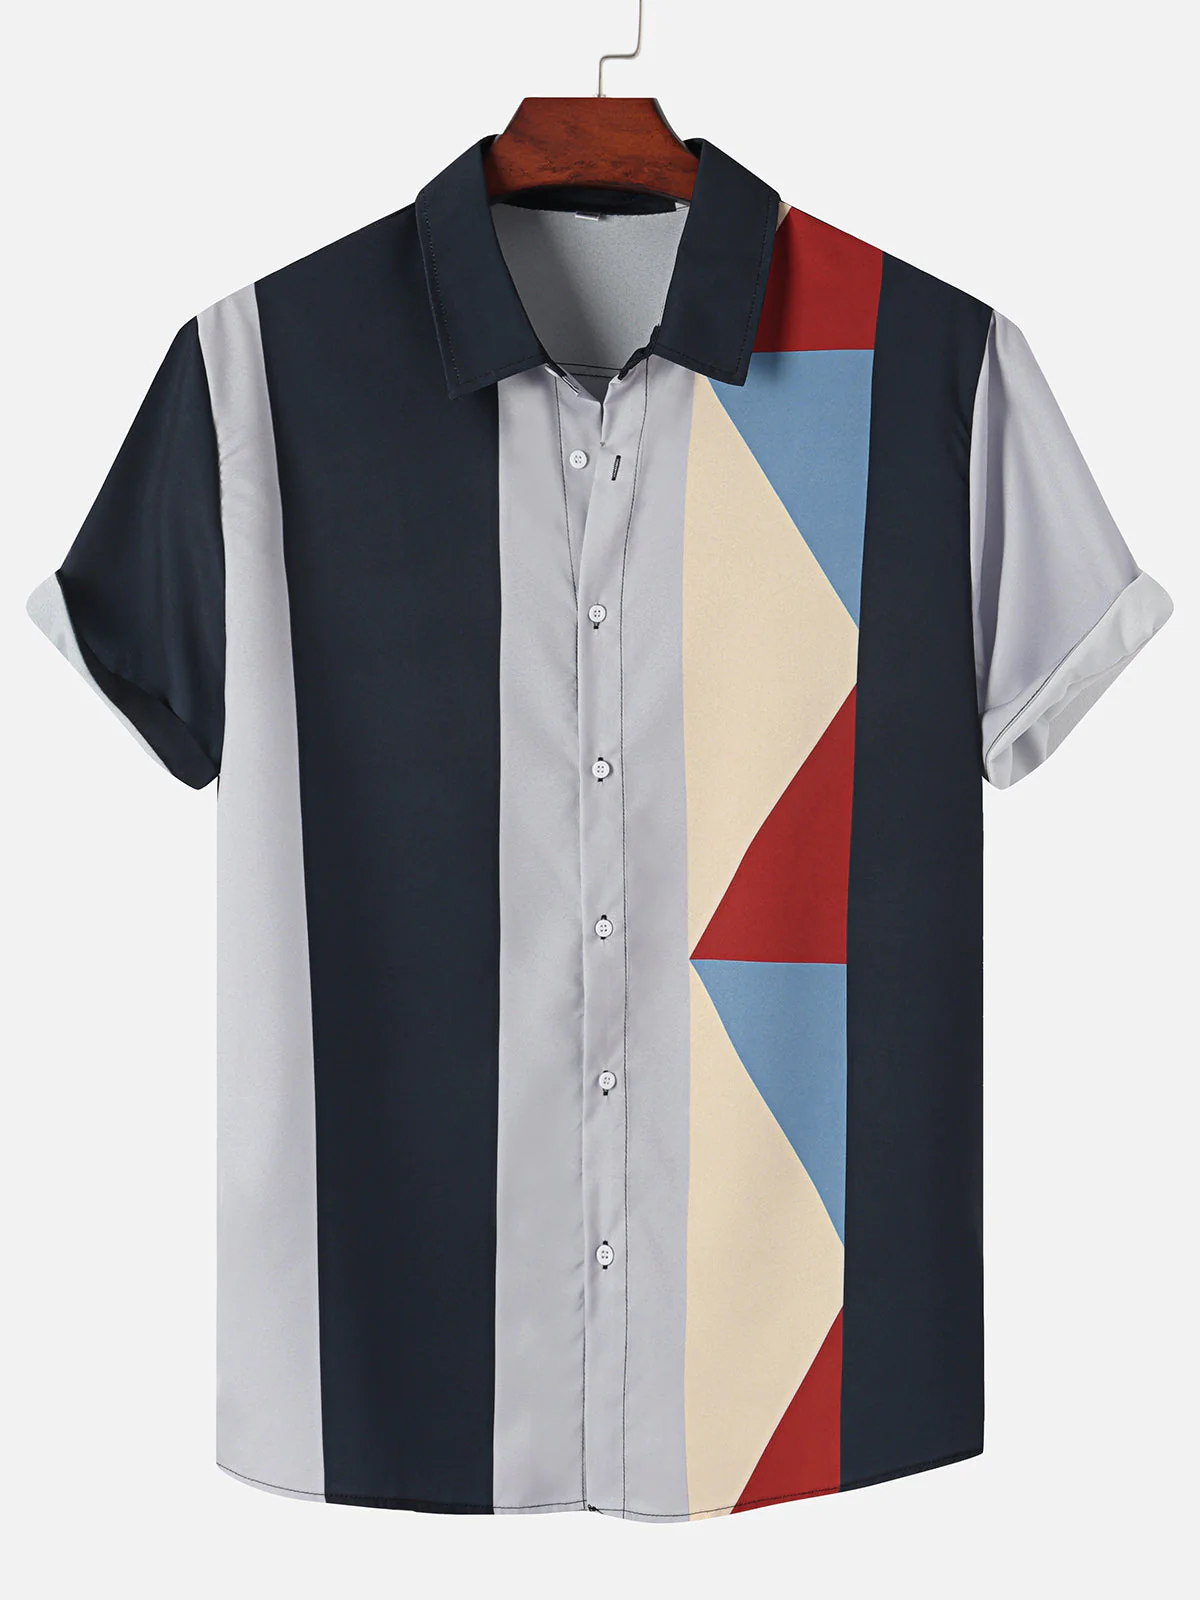 Men's Plus Size Casual Dark Blue Contrast Striped Shirt PLUSCLOTHESMAN